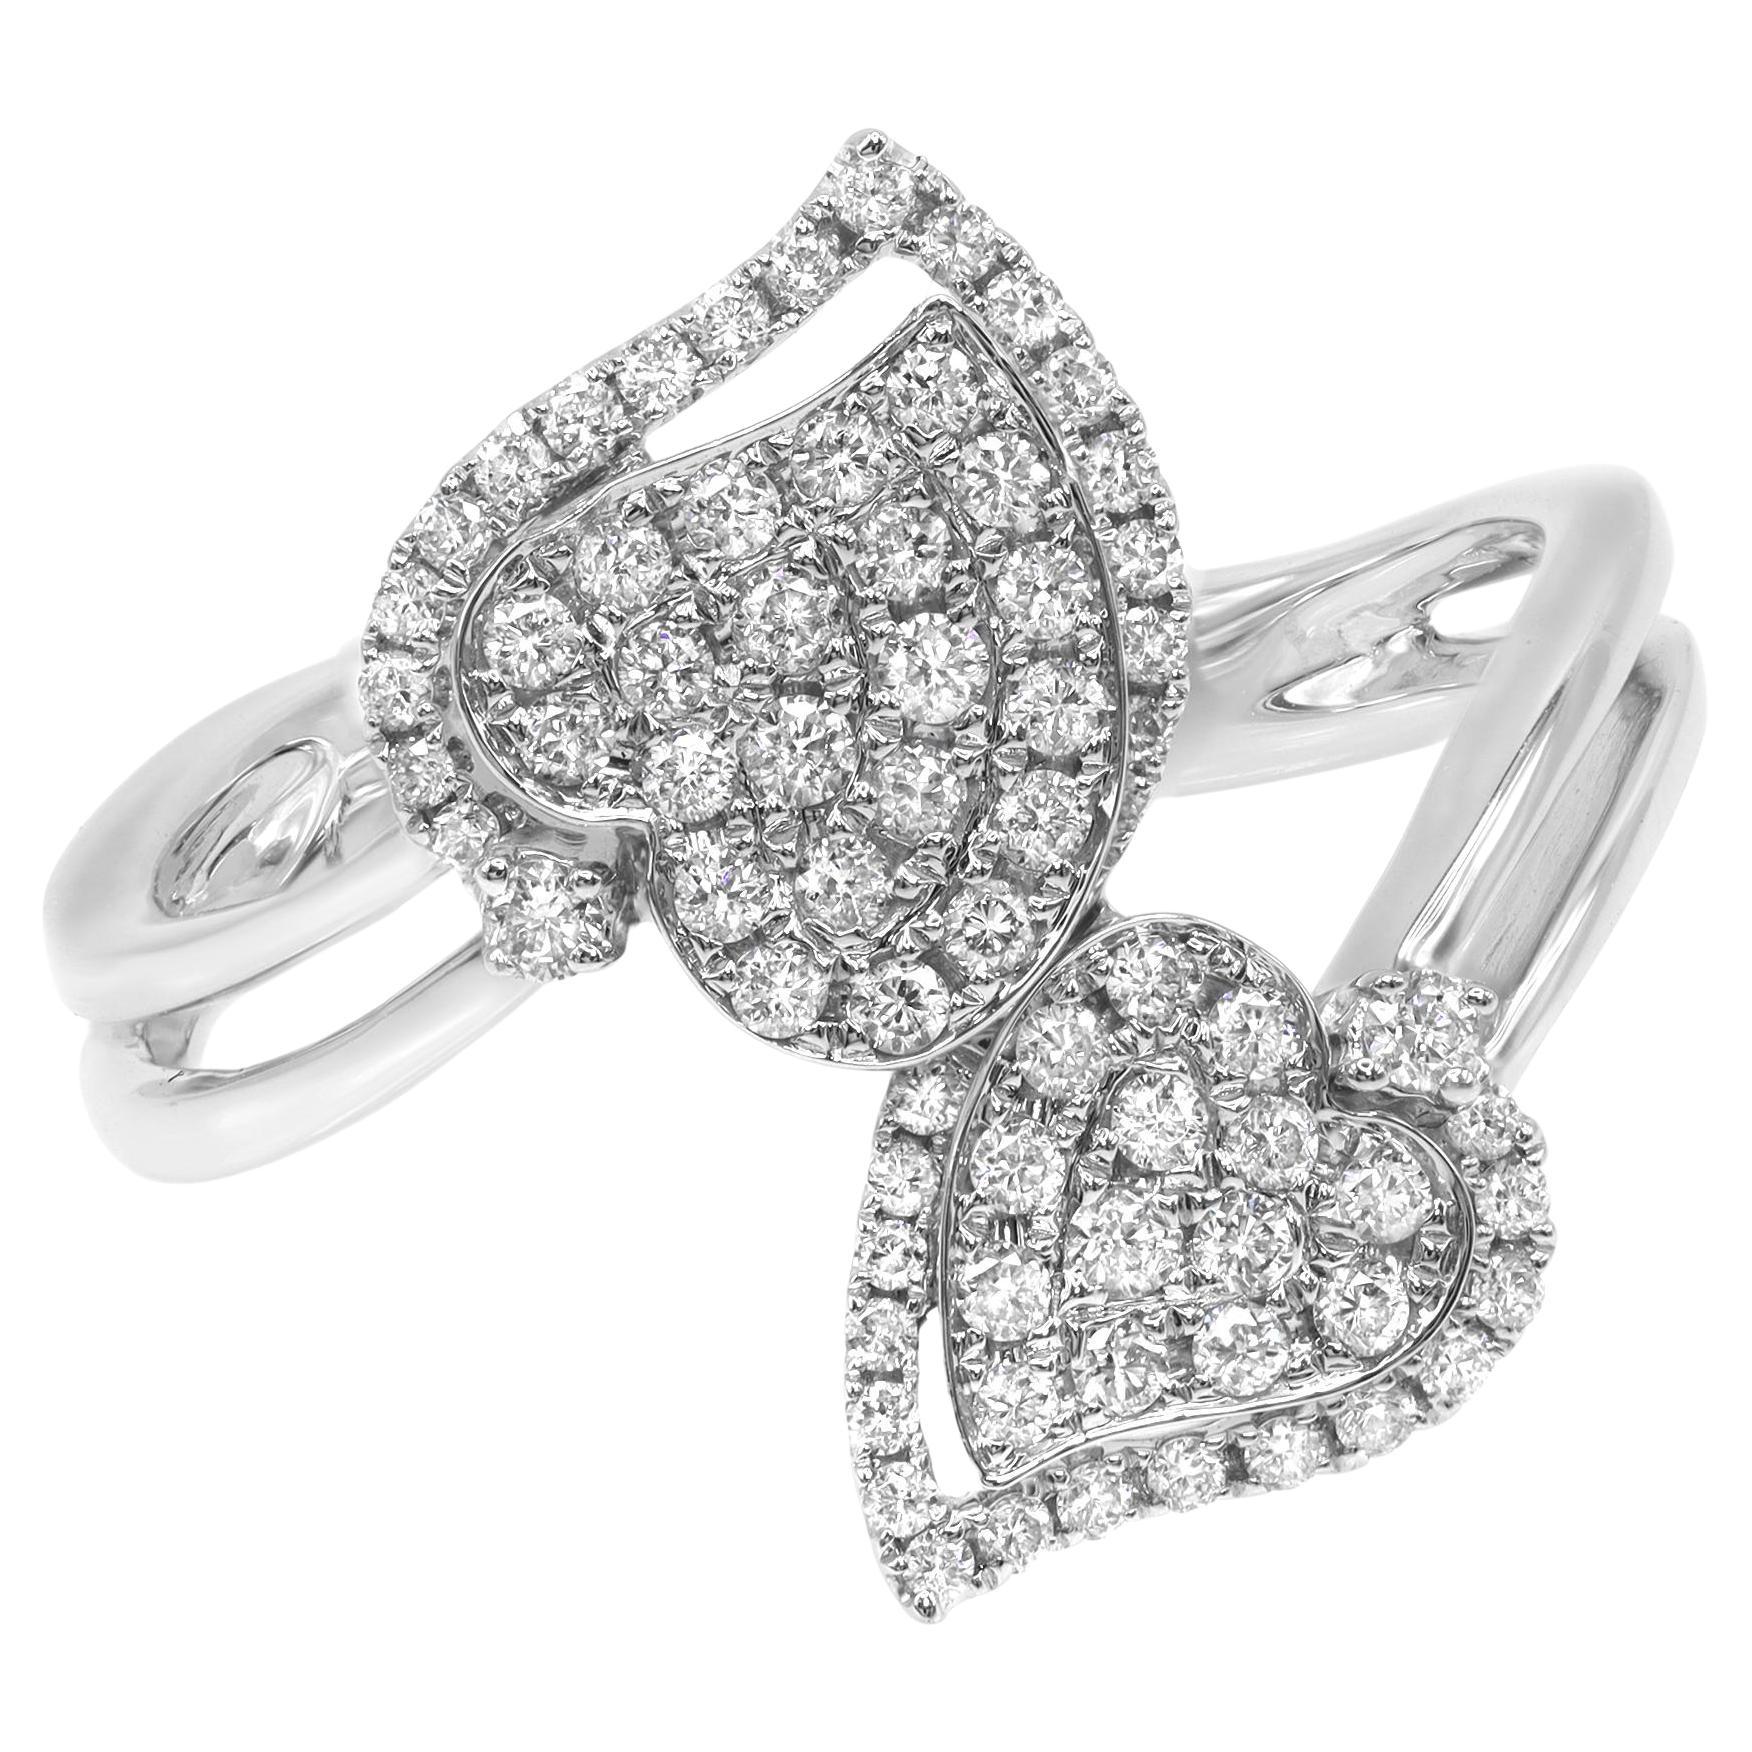 Rachel Koen Double Heart Diamond Ring 18K White Gold 0.53Cttw For Sale